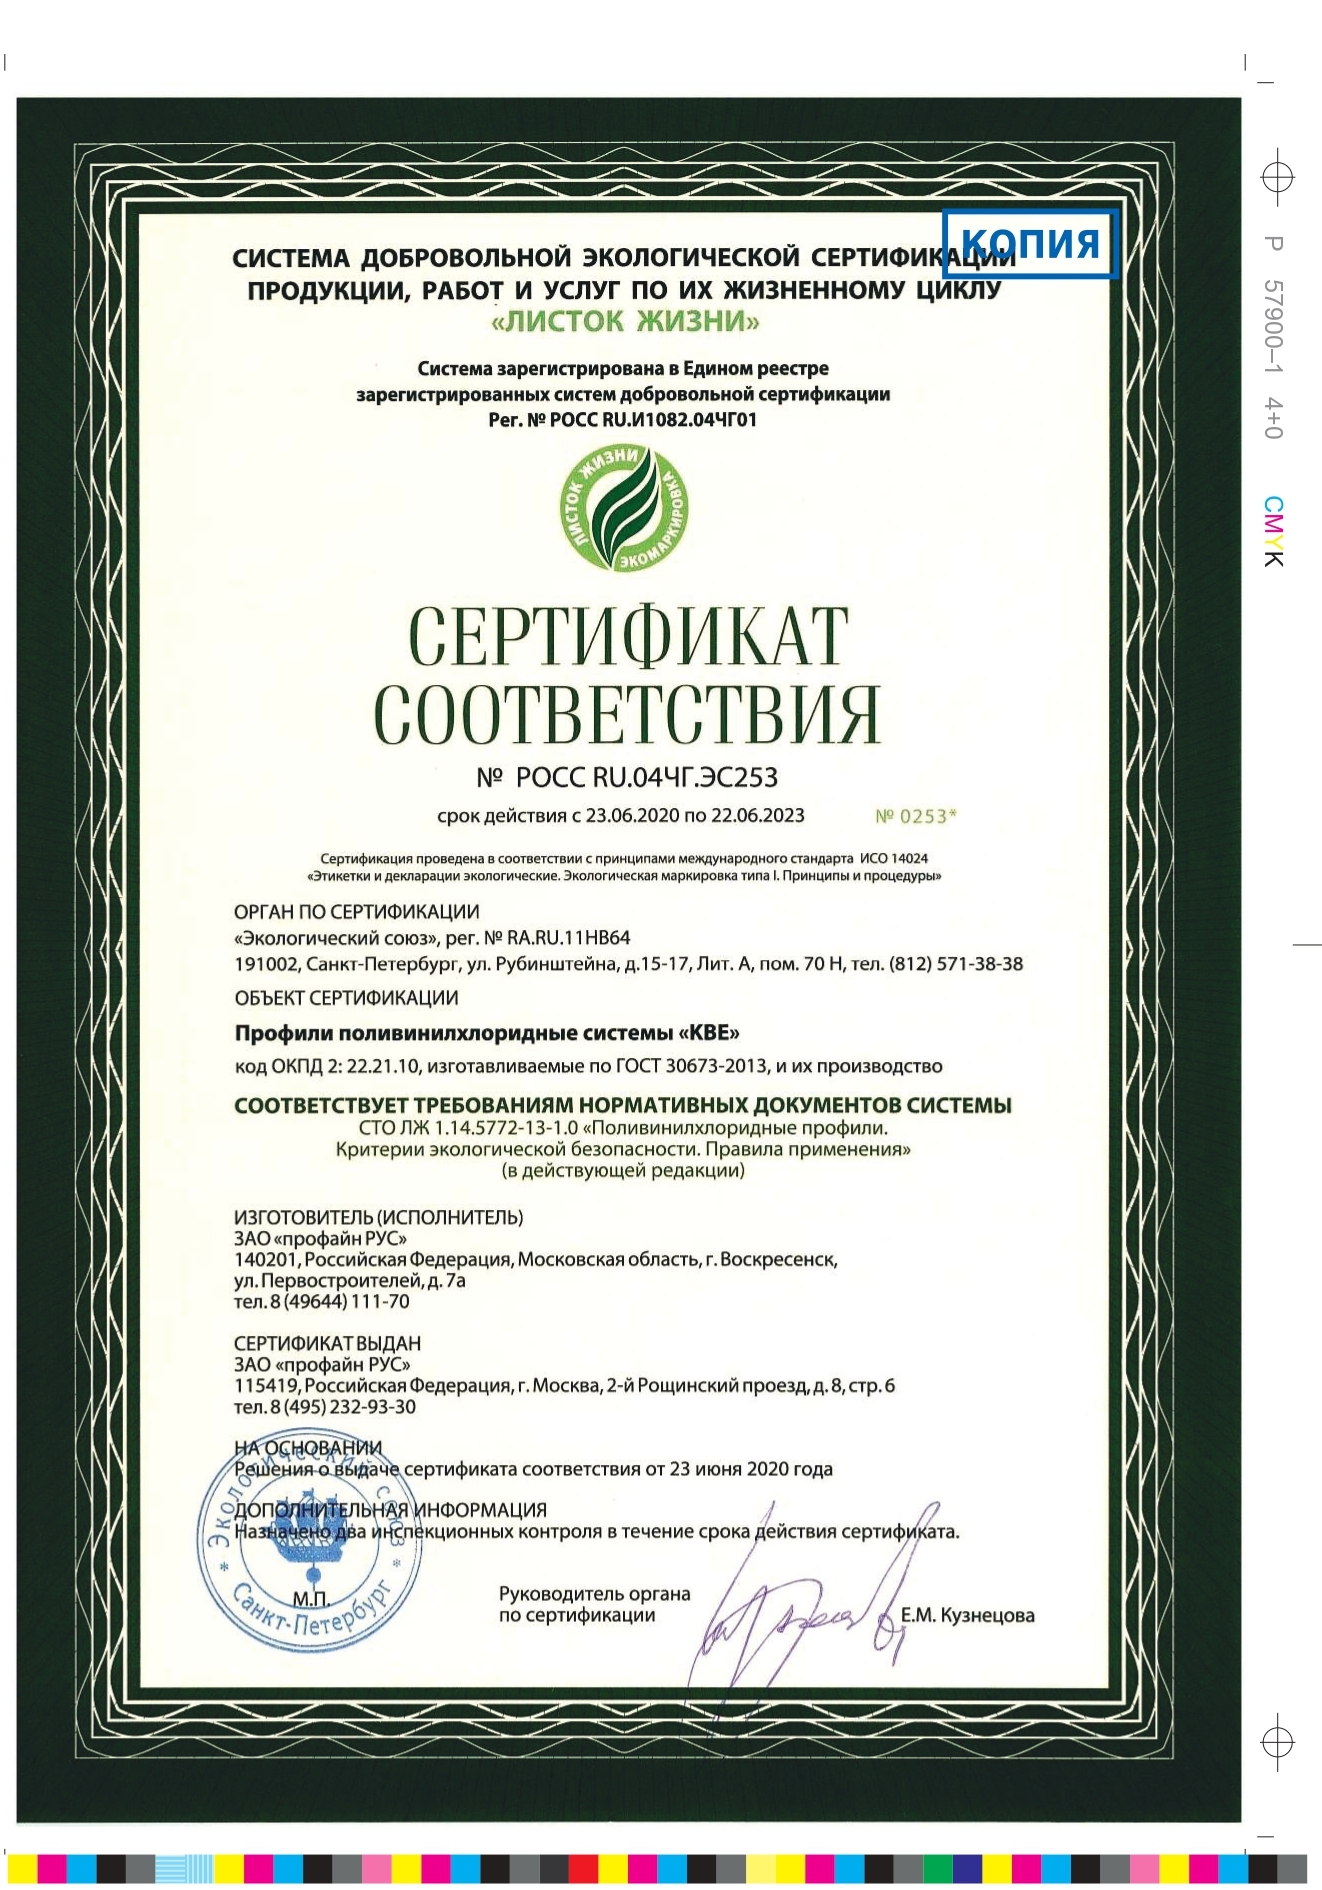 сертификат листок жизни_page-0001 (2)